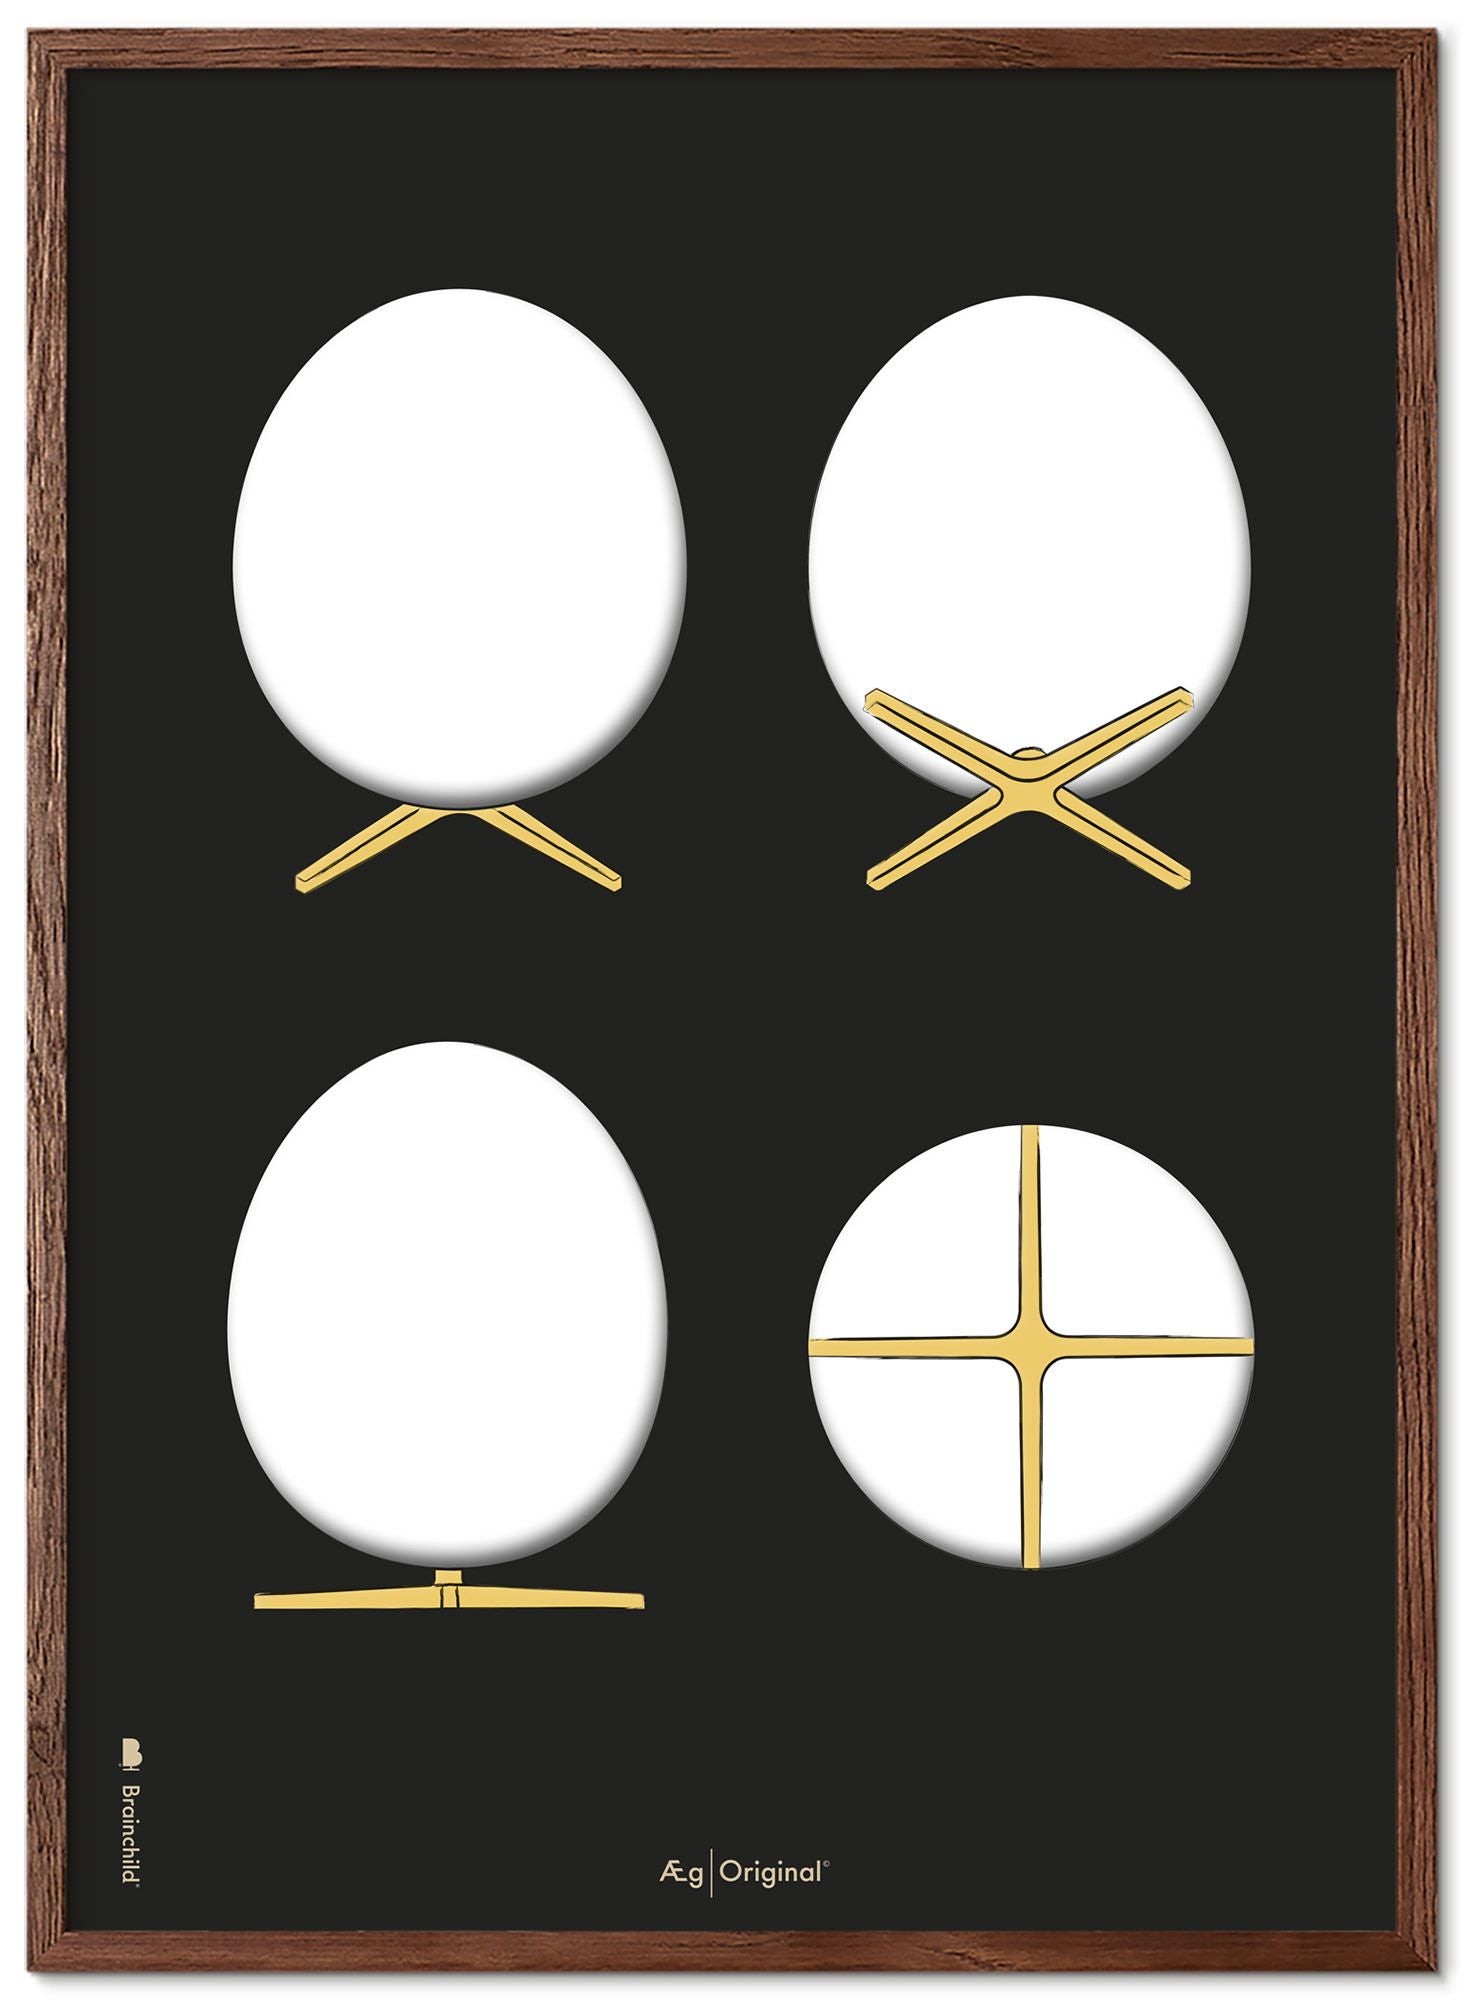 Prepare el marco de póster de bocetos de diseño de huevo hecho de madera oscura A5, fondo negro